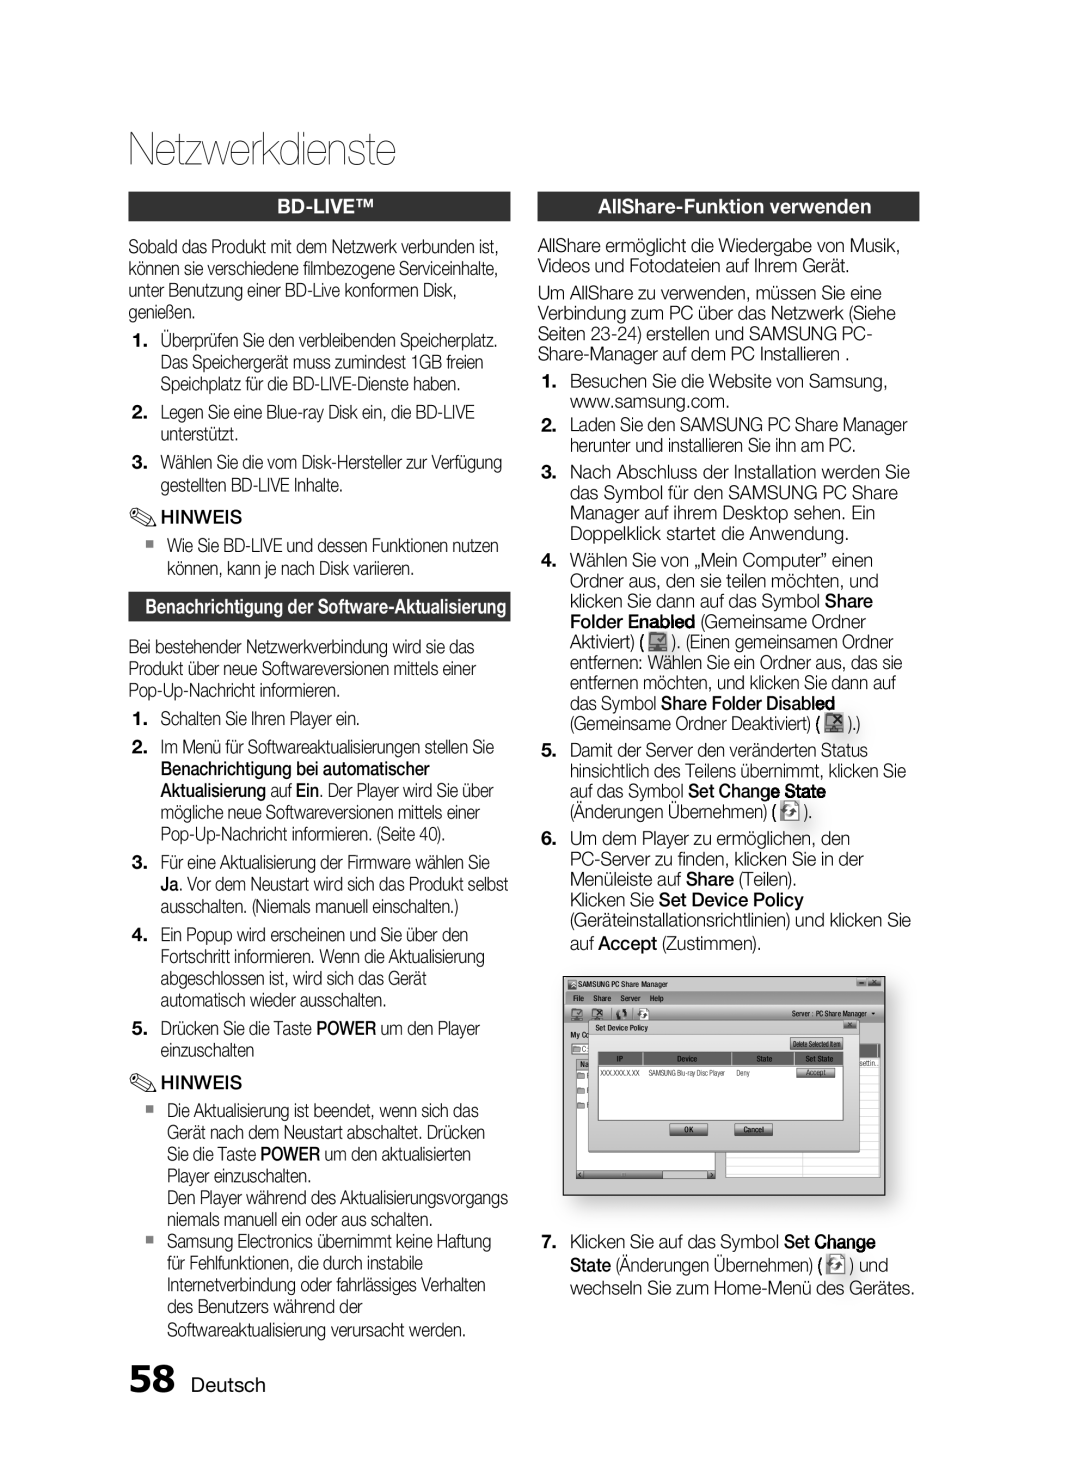 Samsung HT-C6200/EDC, HT-C6200/XEN, HT-C6200/XEF manual Bd-Live, Deutsch, Netzwerkdienste 